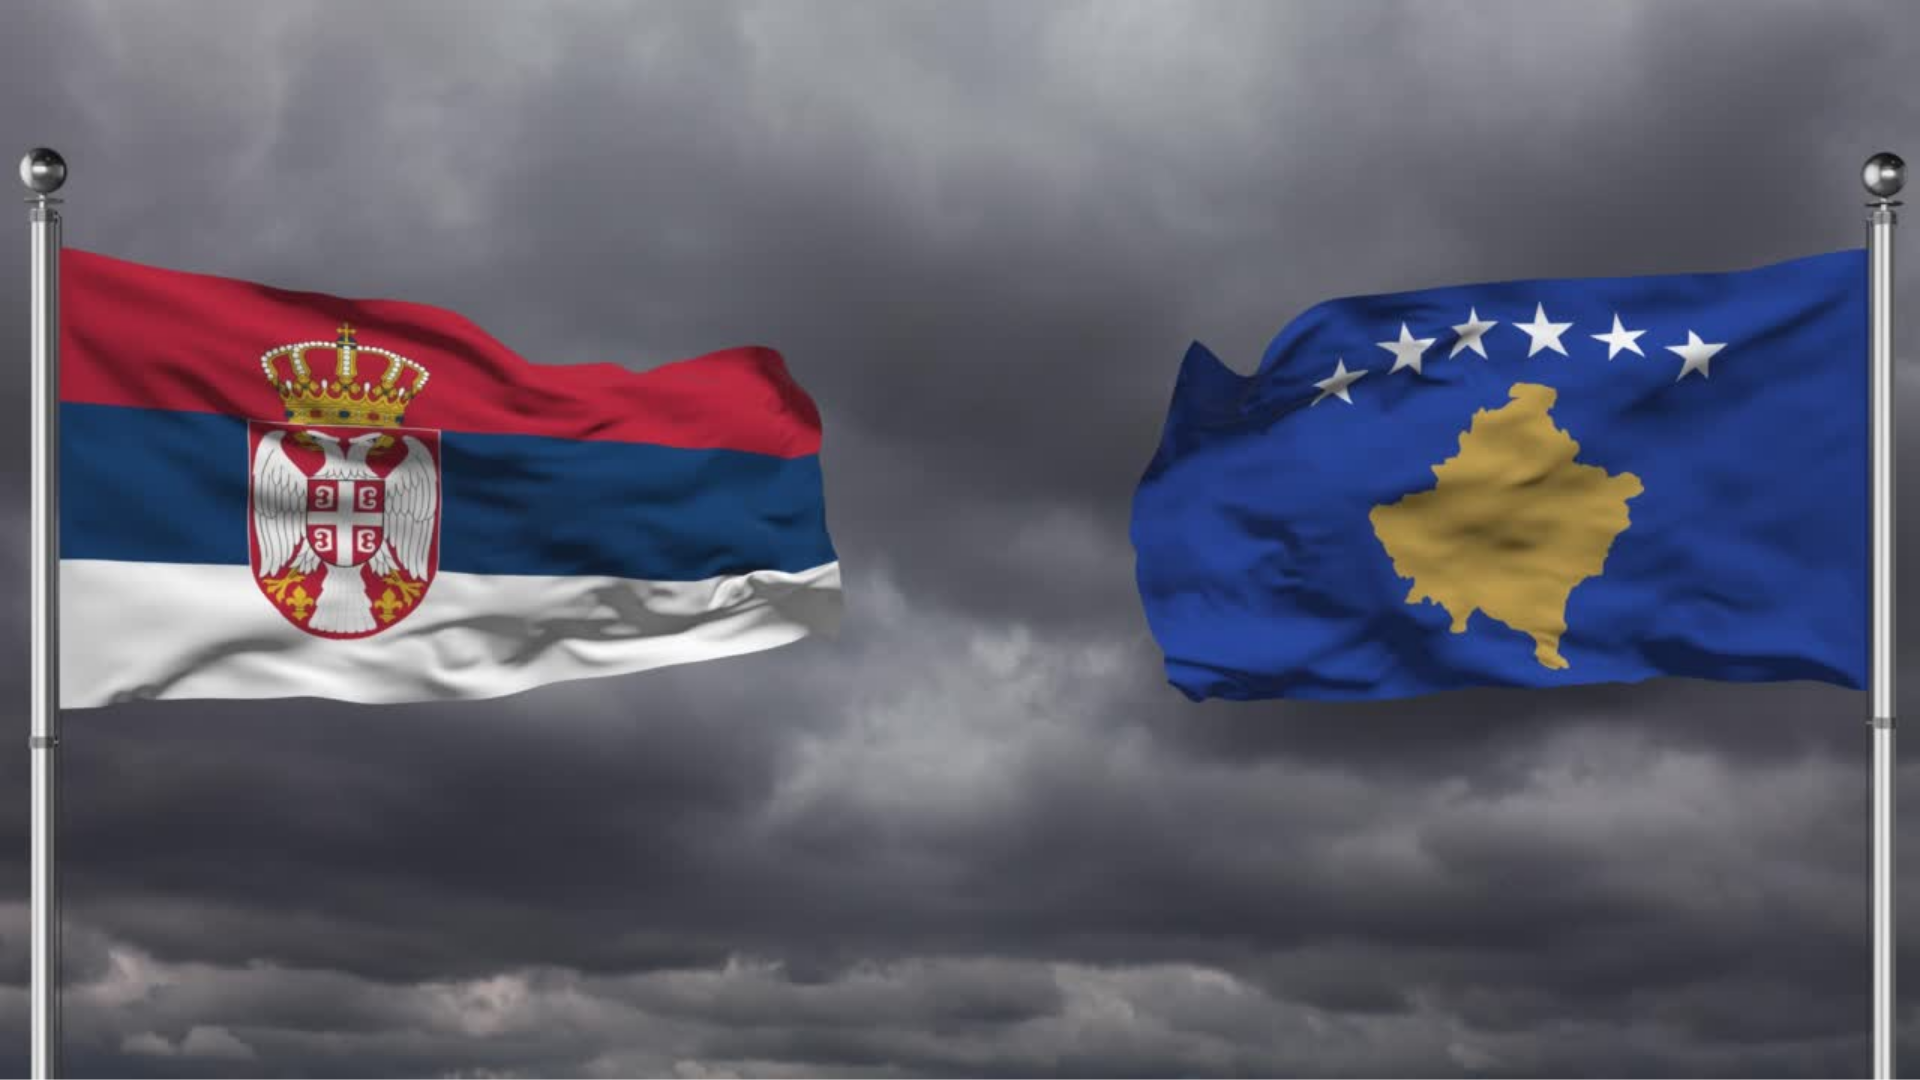 Diplomacia shëtitëse po tregon shenjat fillestare të rezultateve në ndërmjetësimin; Kosovë-Serbi: Asociacione të komuniteteve pakicë, edhe brenda Serbisë